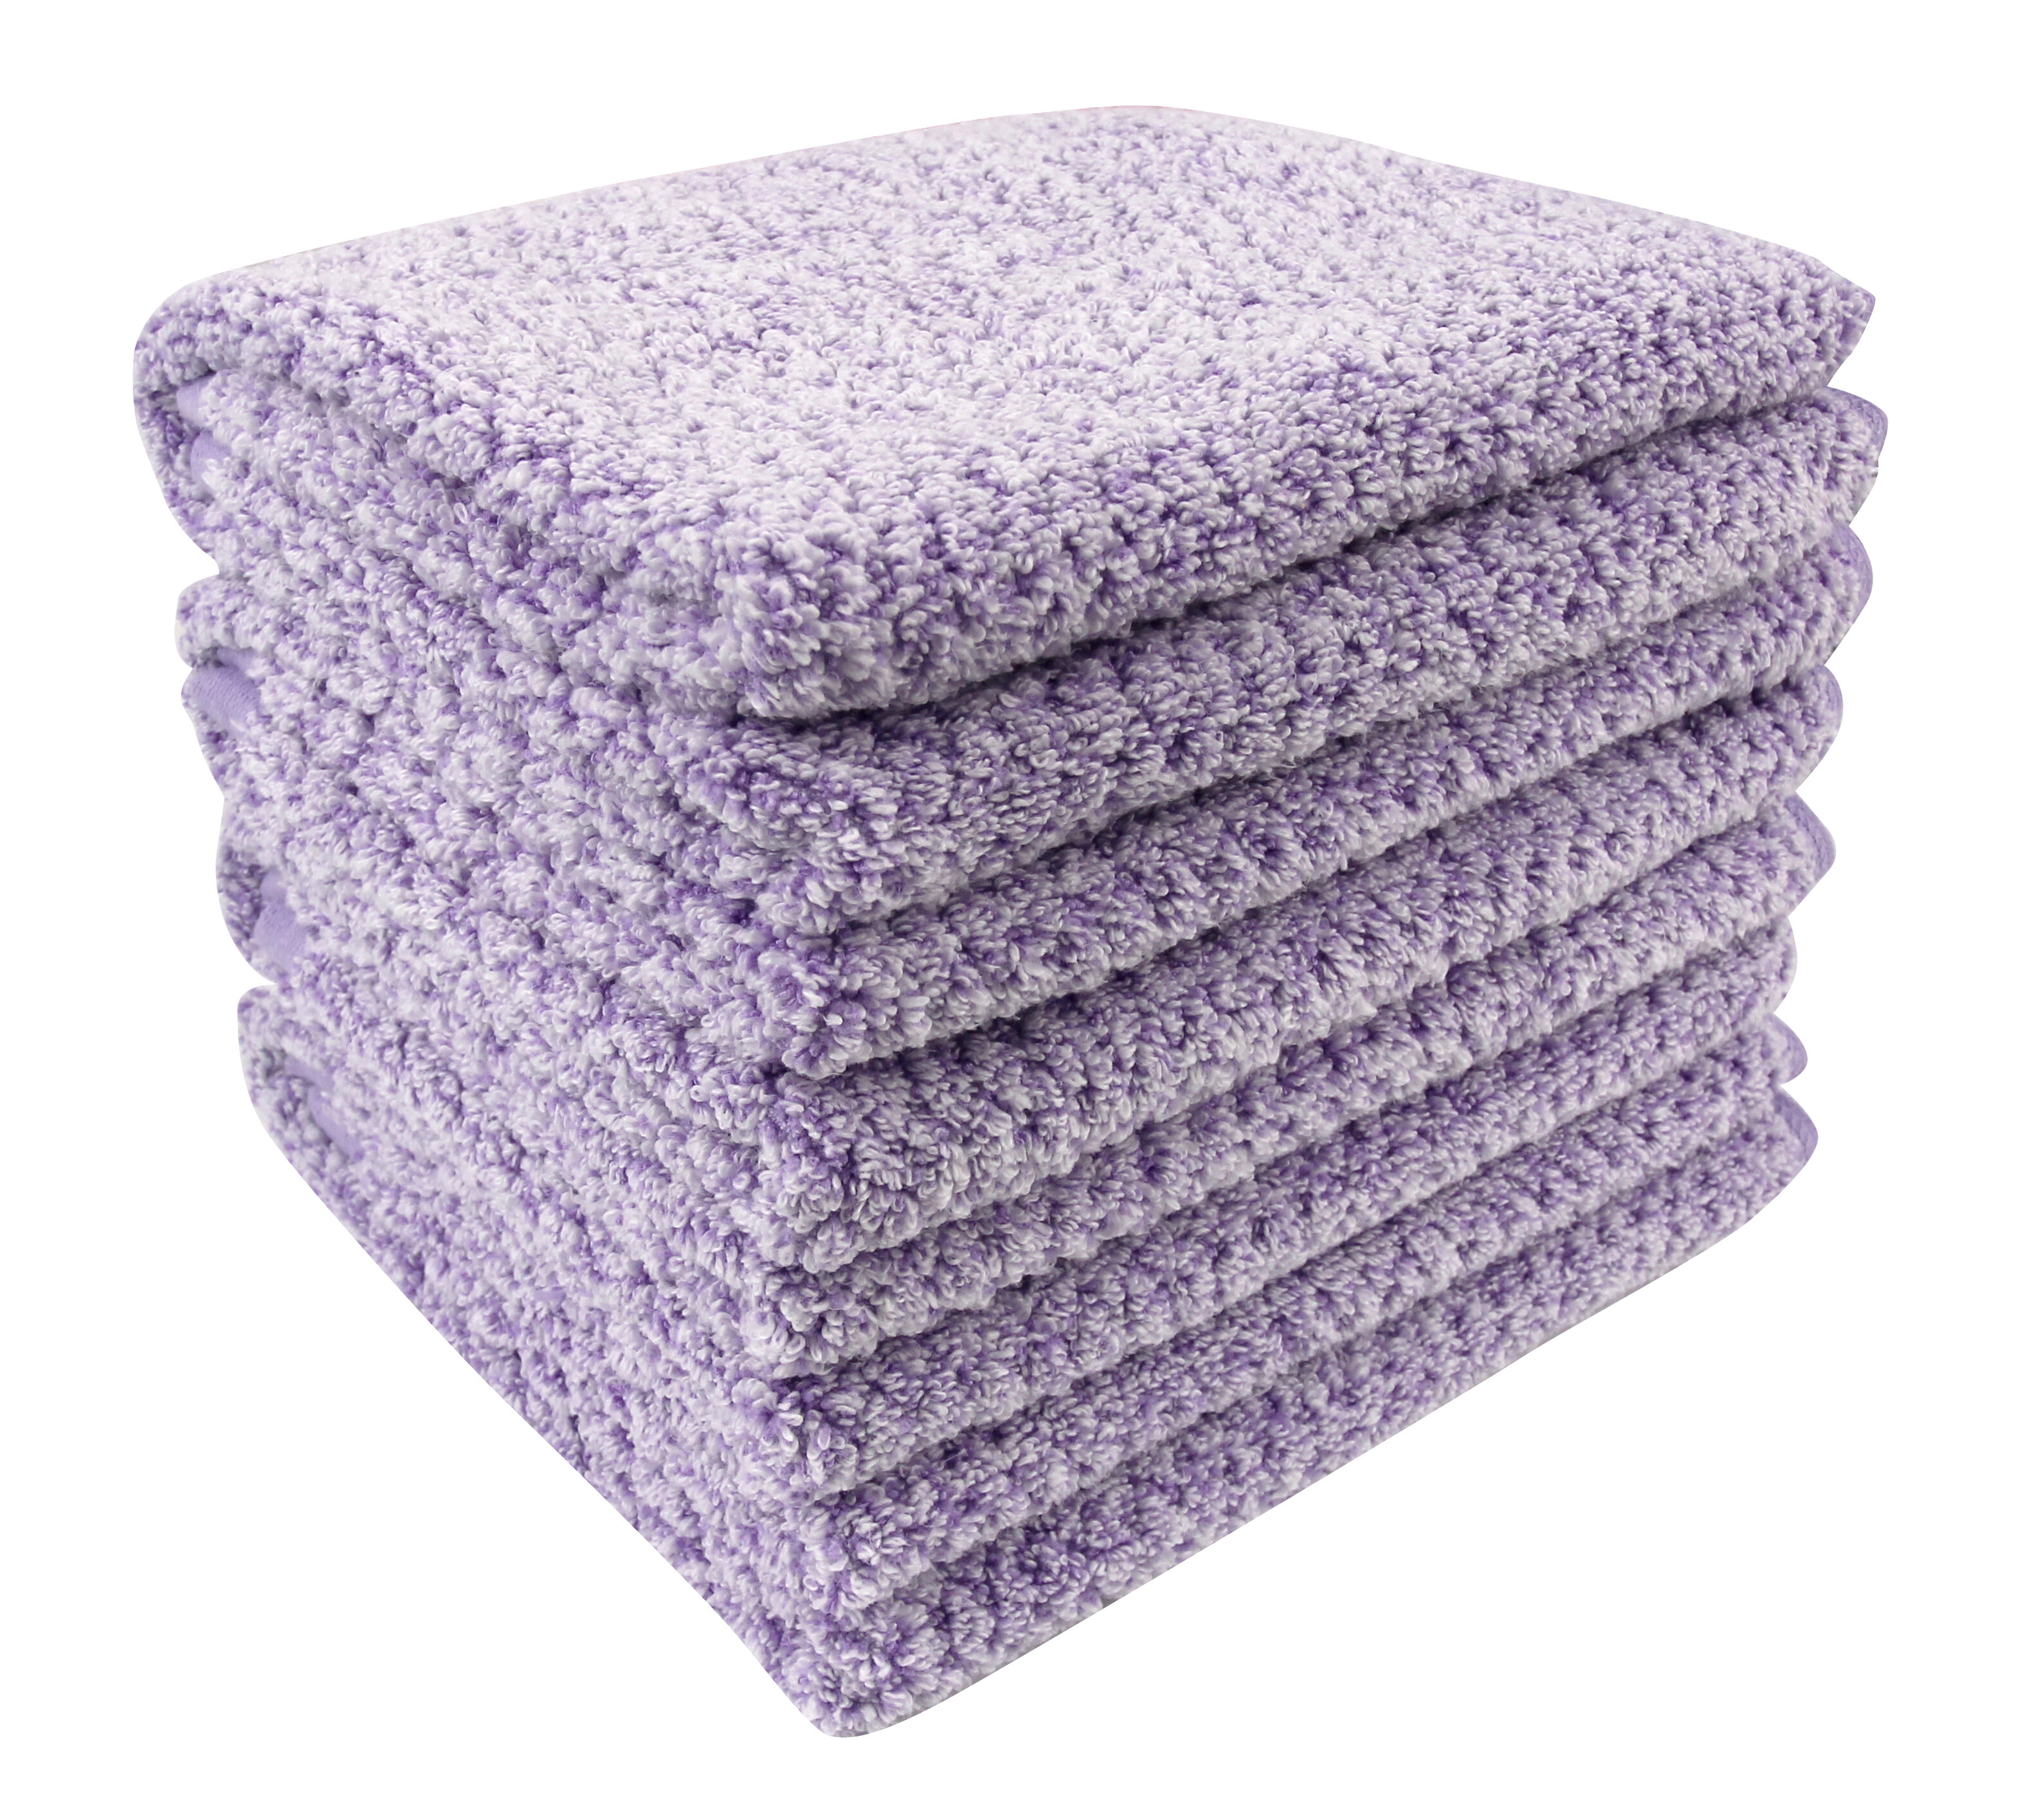 https://assets.wfcdn.com/im/60283927/compr-r85/5087/50870984/aryon-cotton-blend-hand-towels.jpg